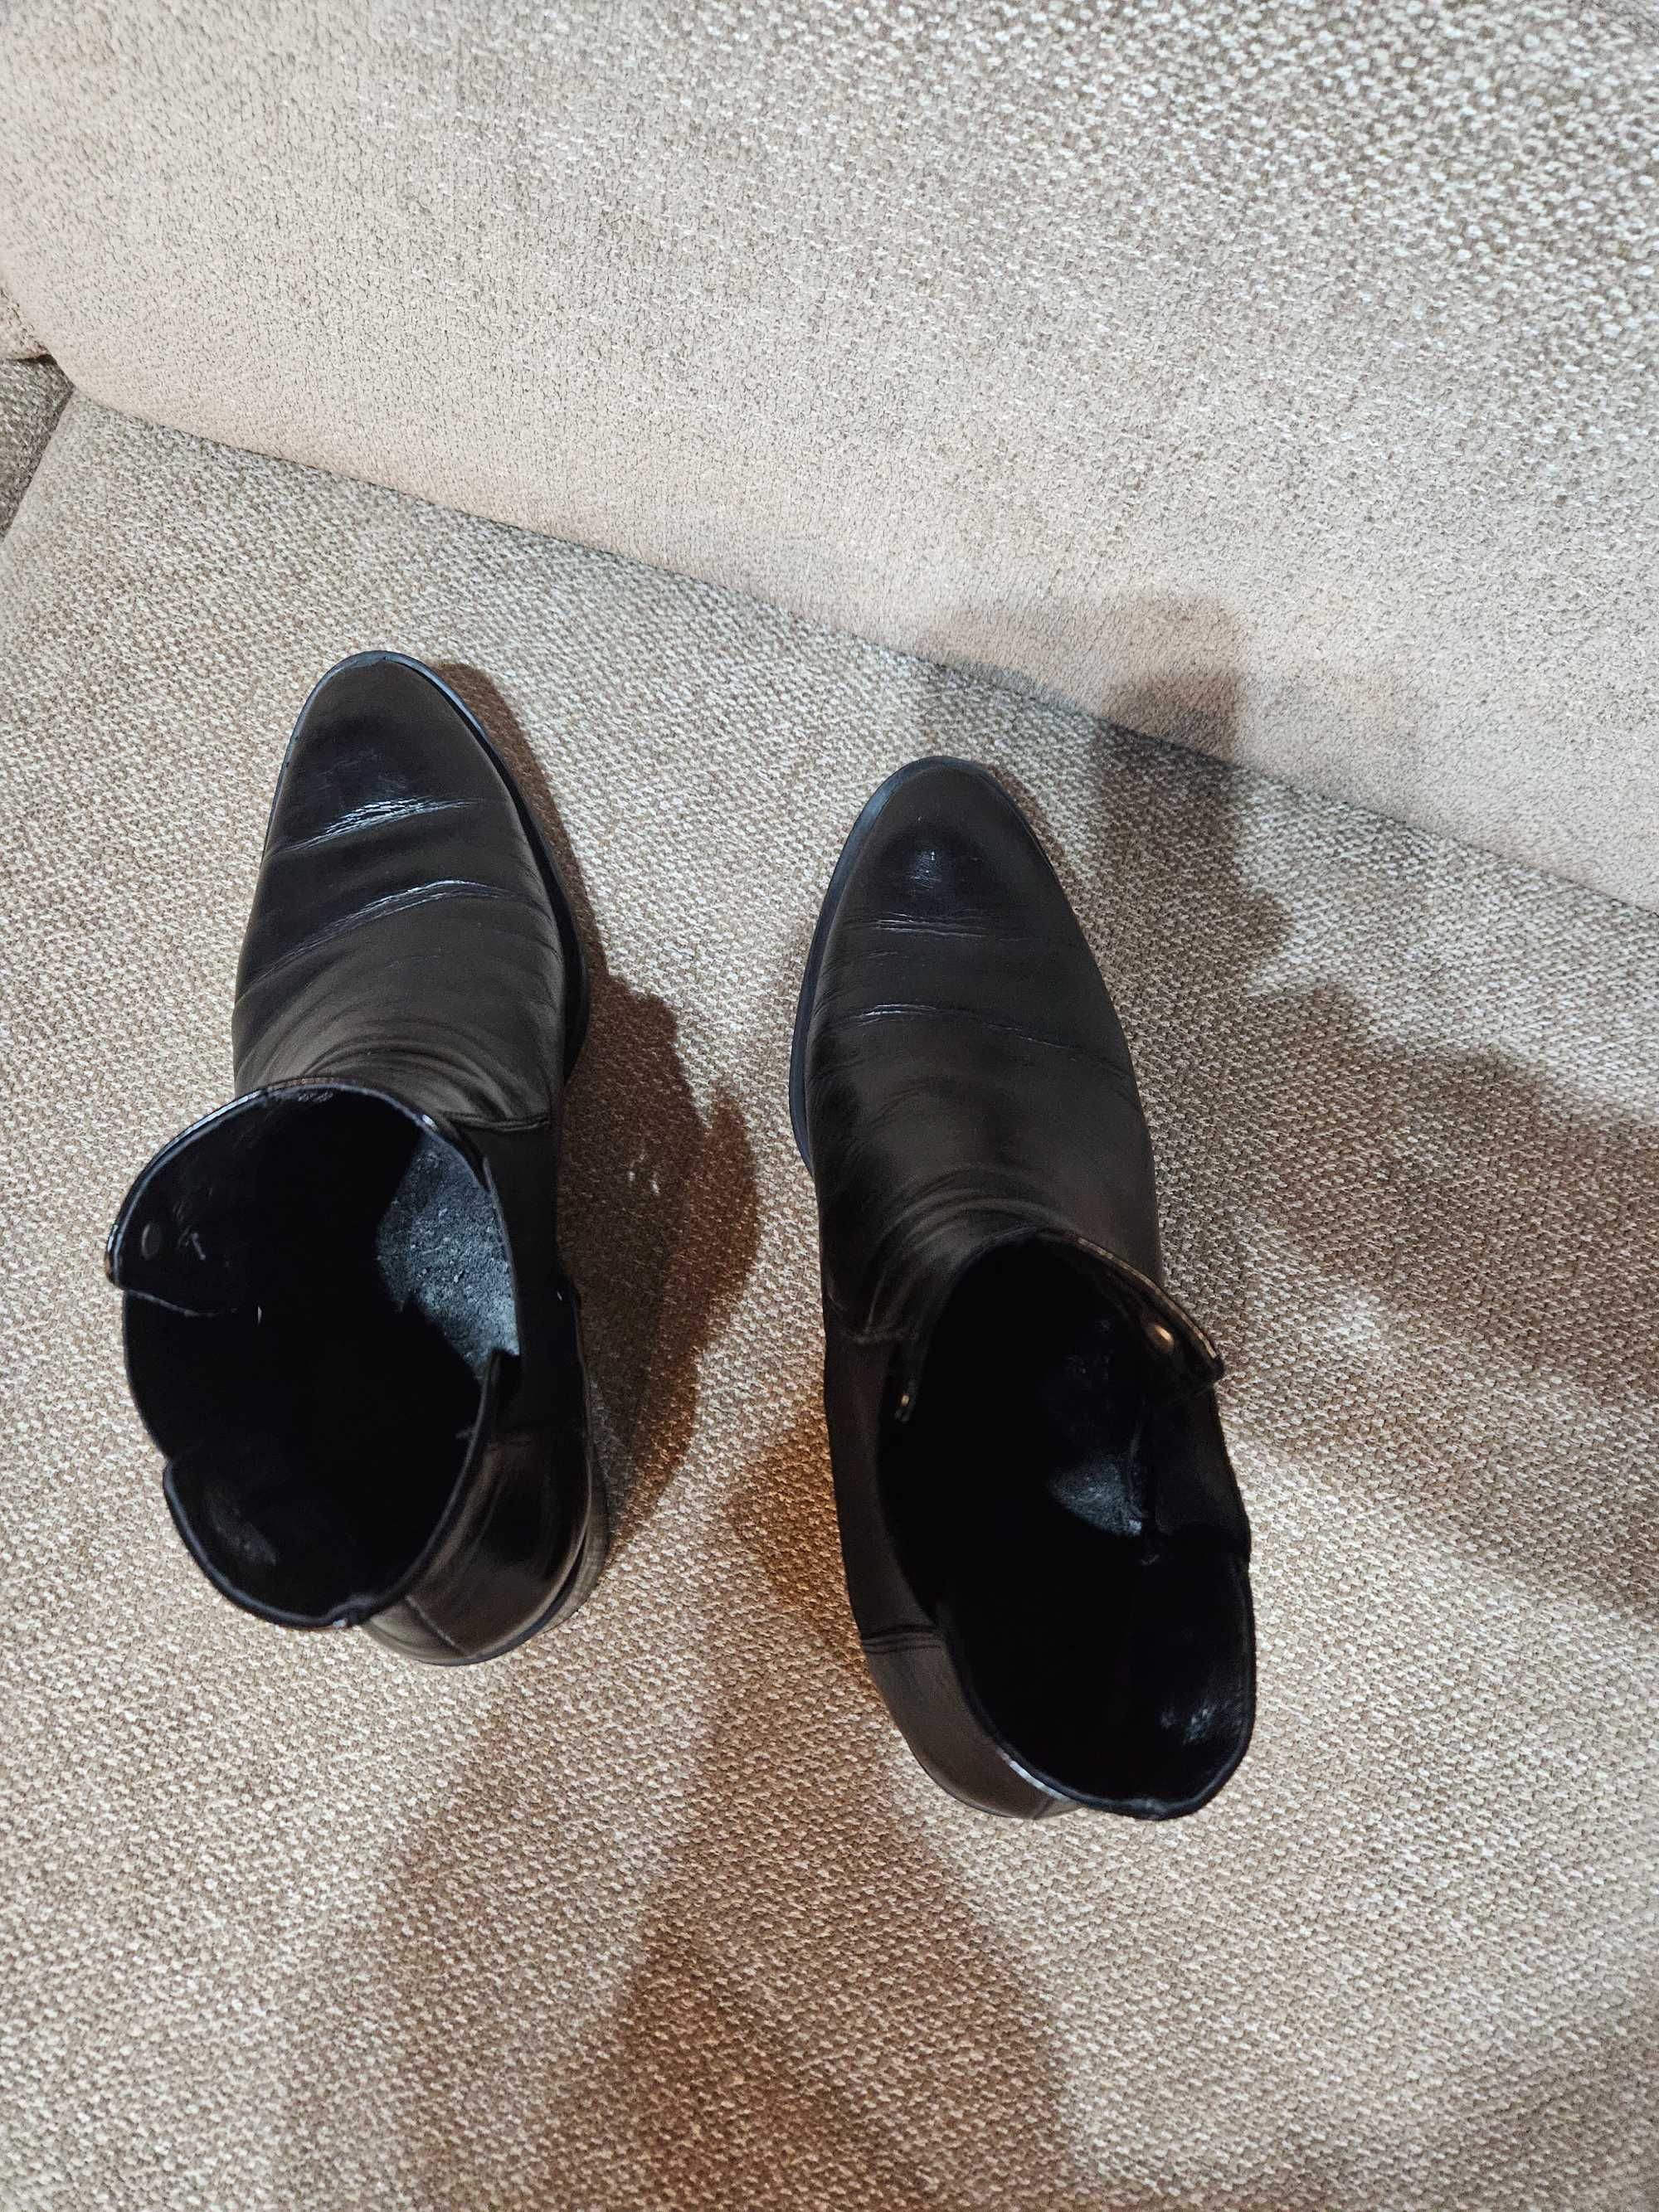 Buty damskie Venezia czarne skórzane rozmiar 39